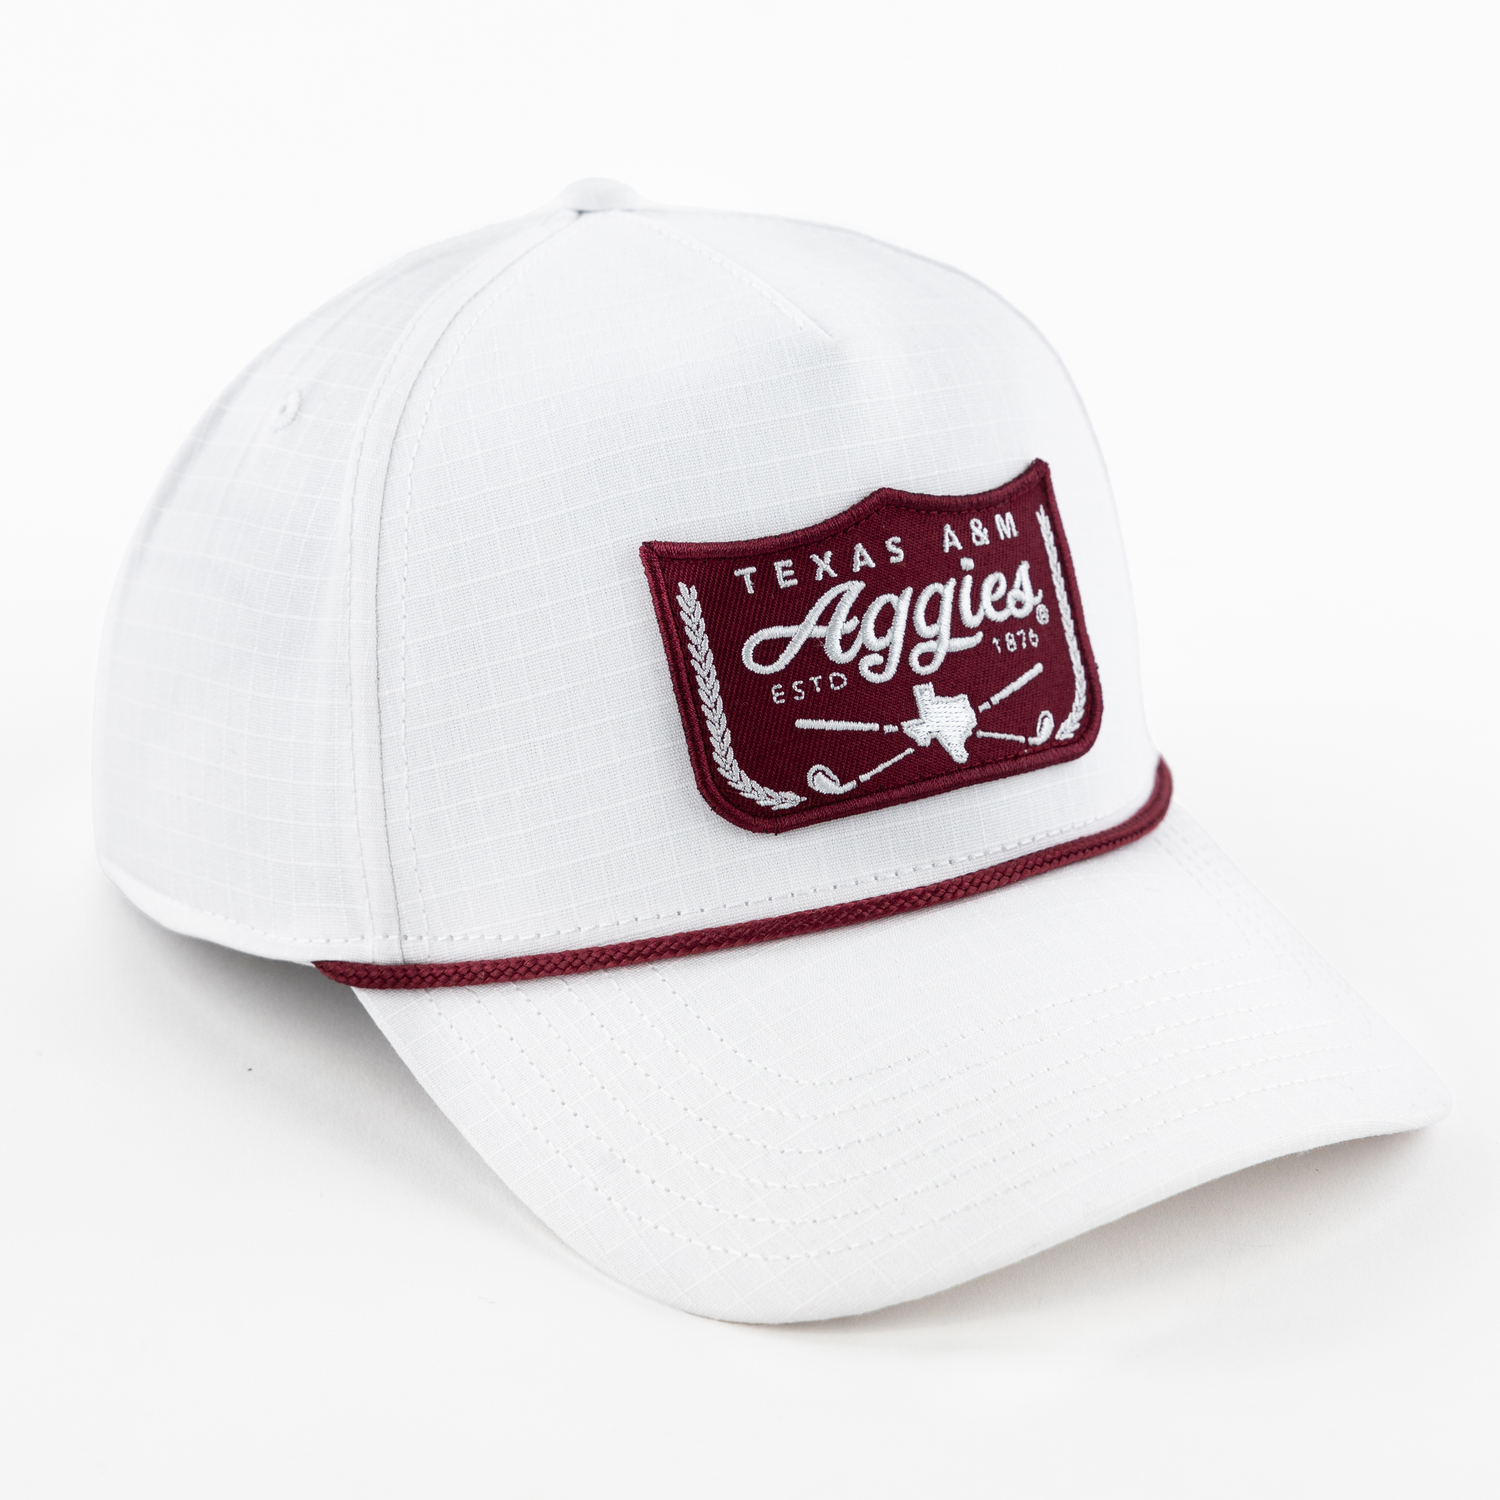 Texas A&M Aggies Golf Club Cross Hat